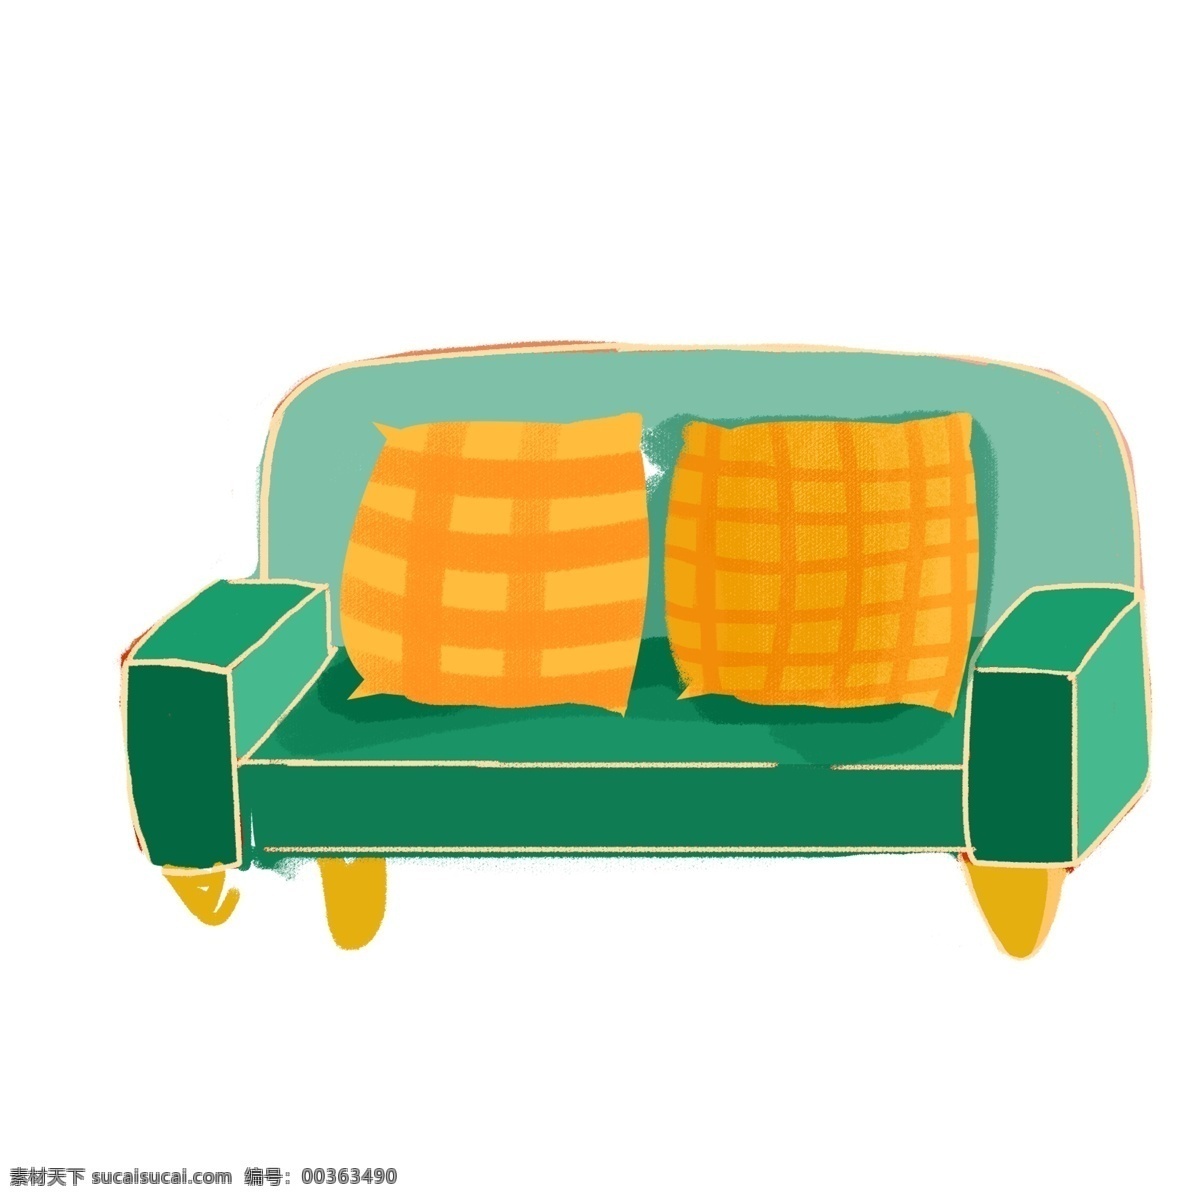 卡通 沙发 图案 元素 卡通沙发 家居沙发 沙发图案 抱枕 家具 元素设计 创意元素 手绘元素 免抠元素